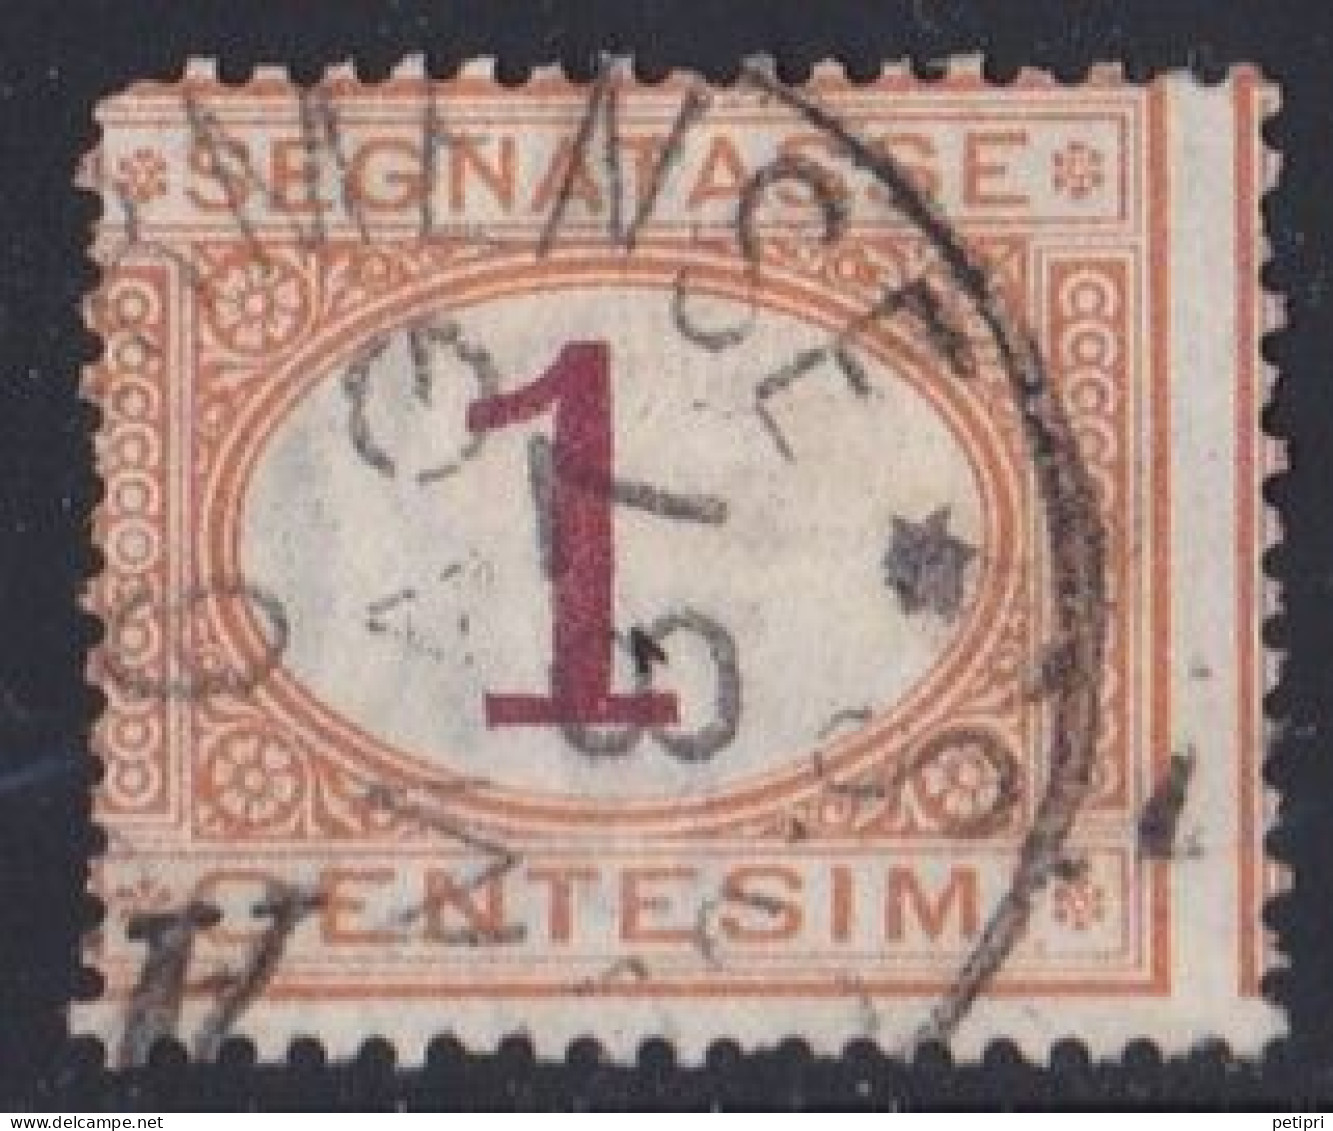 Italie - 1861 - 1878  Victor Emmanuel II  -  Segnatasse  1  Centesimi  Oblitéré - Postage Due